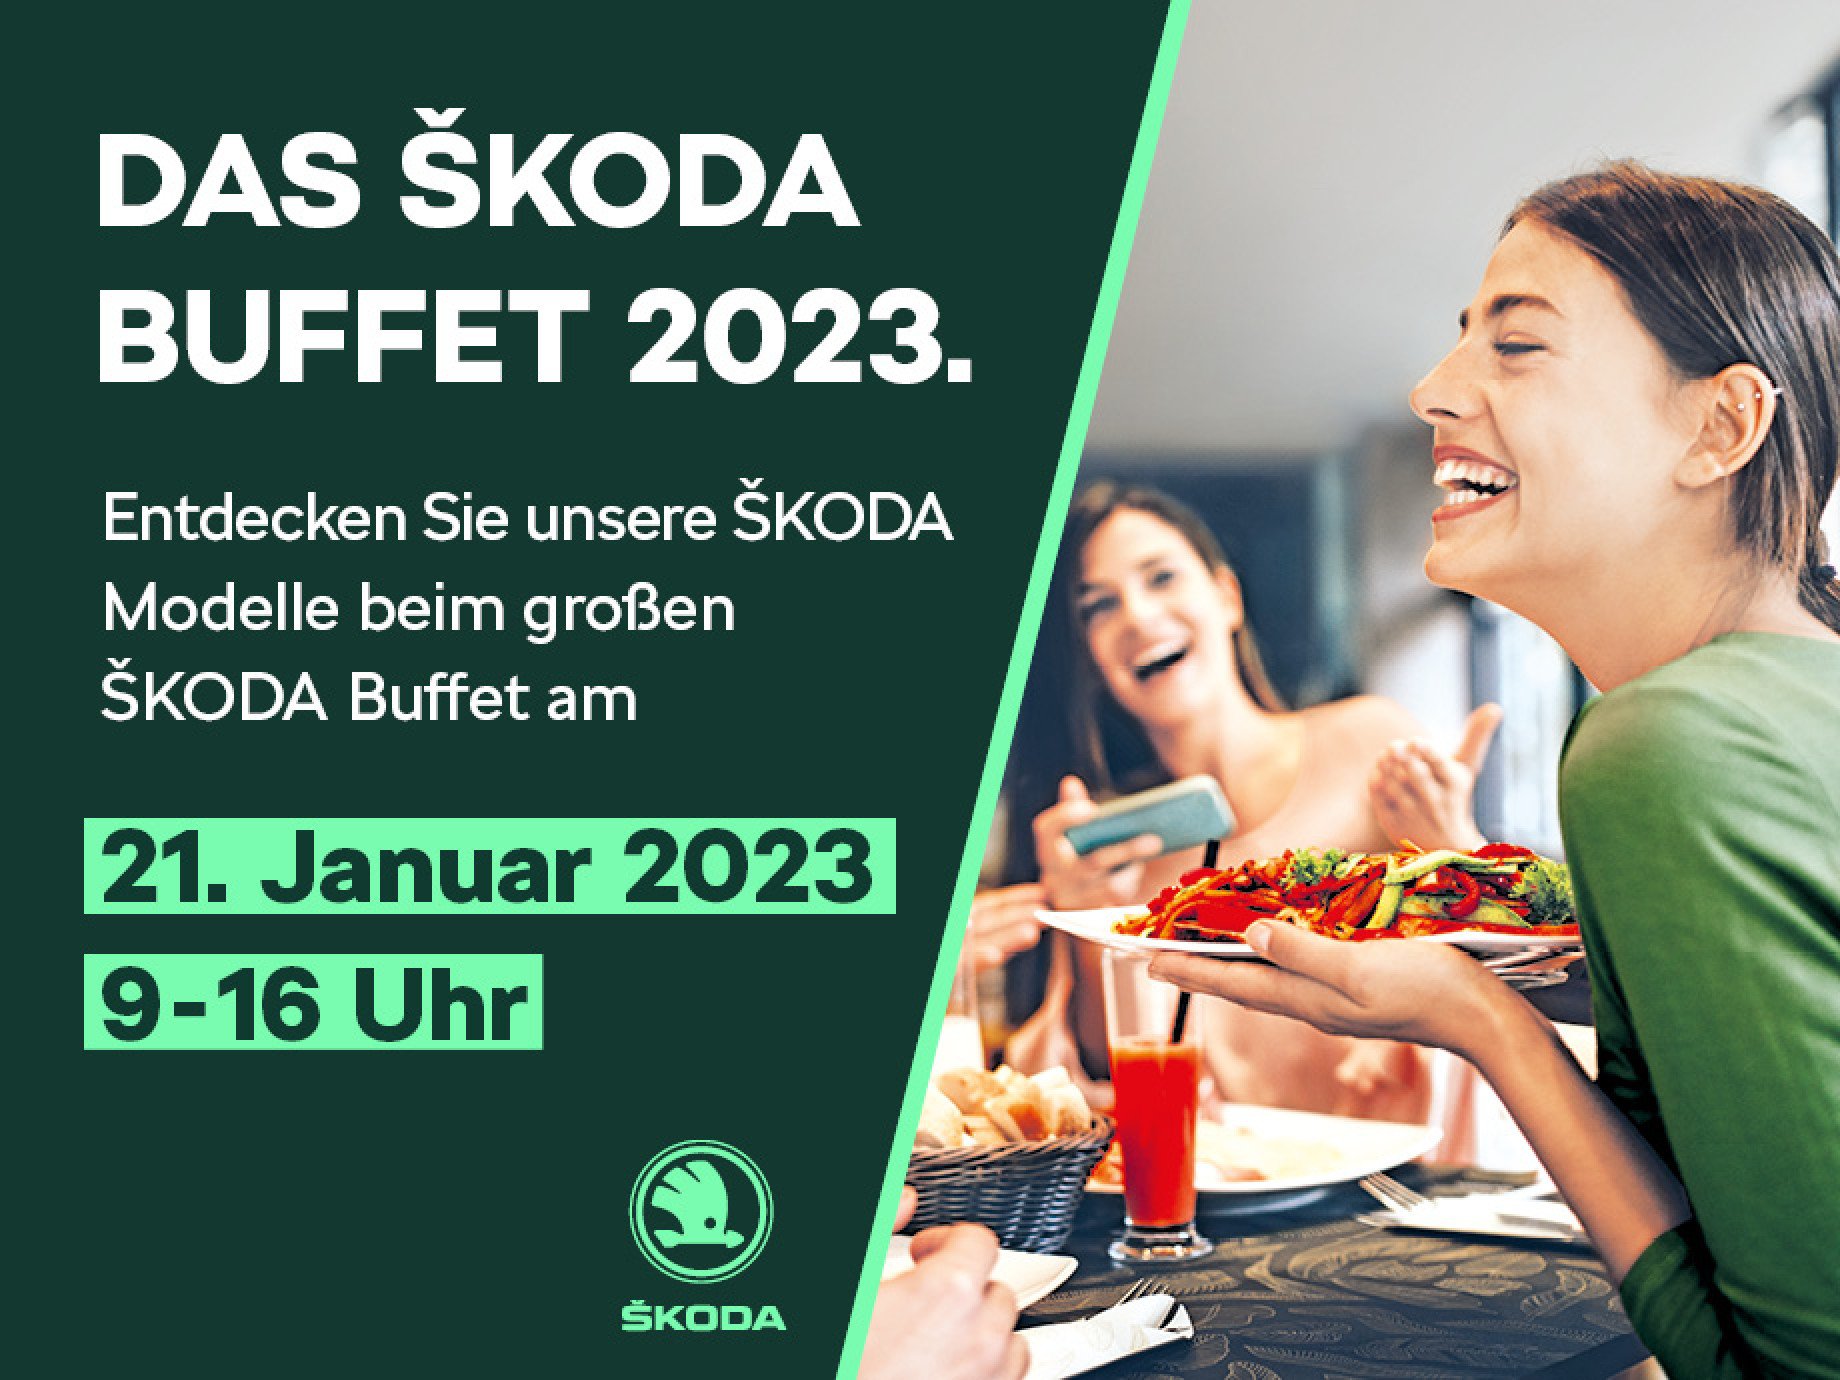 Entdecken Sie Škoda neu – bei unserem Škoda Buffet 2023!